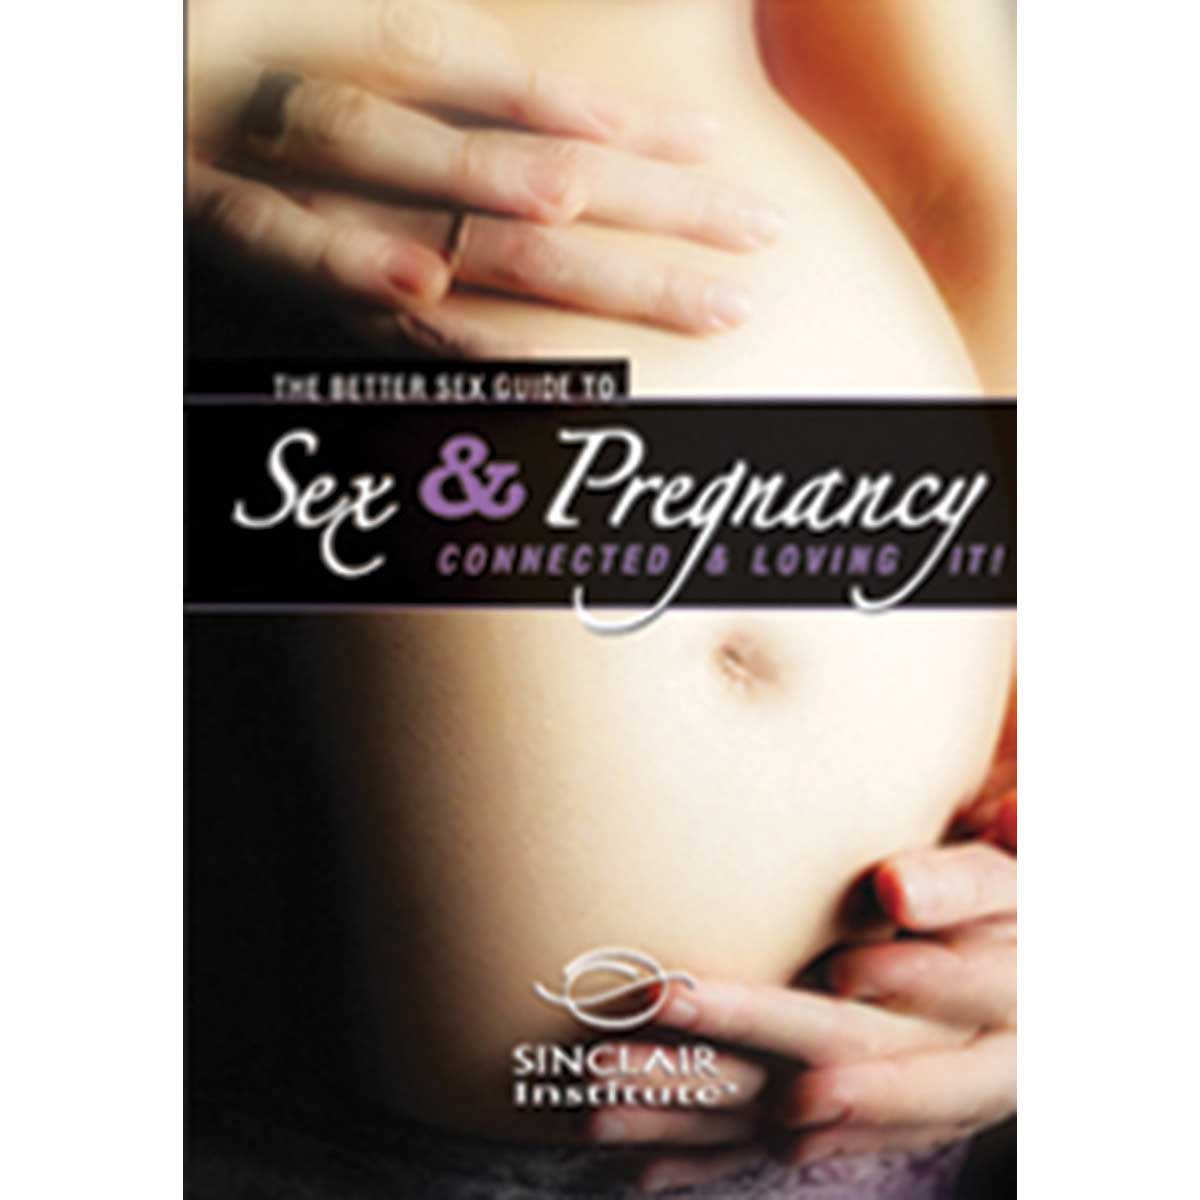 Sex & Pregnancy - Better Sex Guide DVD